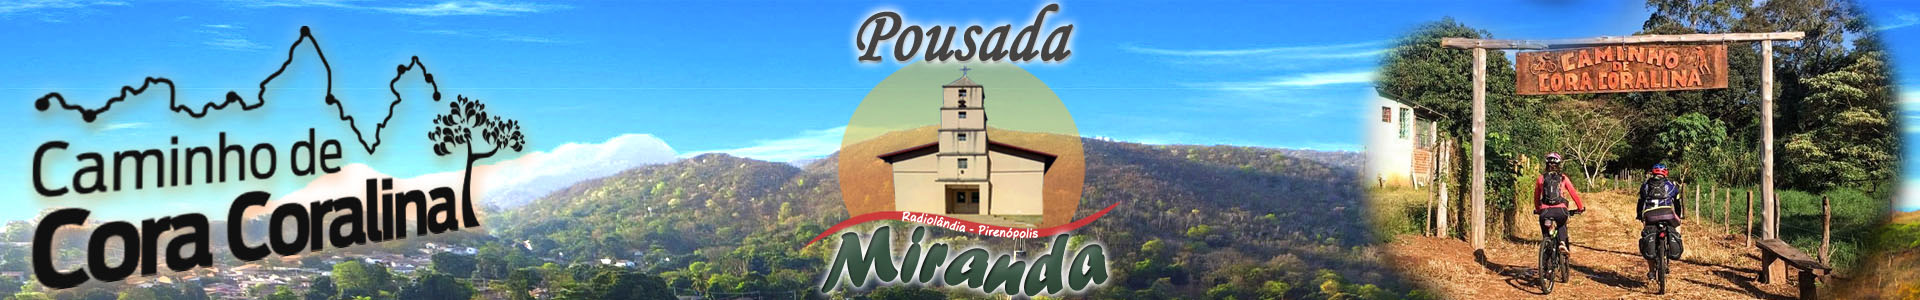 Logo Pousada Miranda